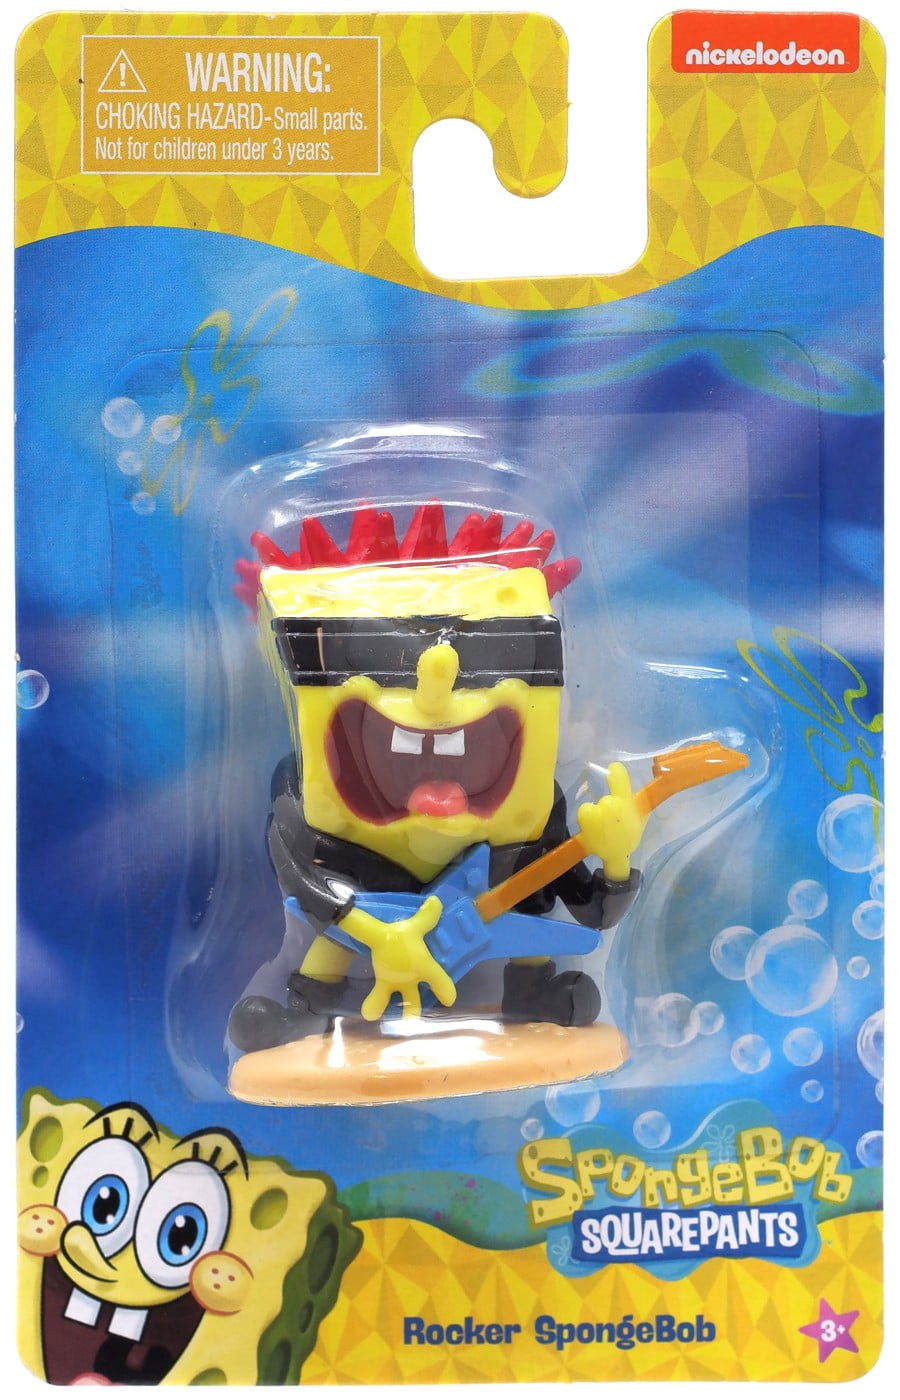 SpongeBob SquarePants Made in Bikini Bottom 20 oz Screw Top Water Bott –  SpongeBob SquarePants Shop